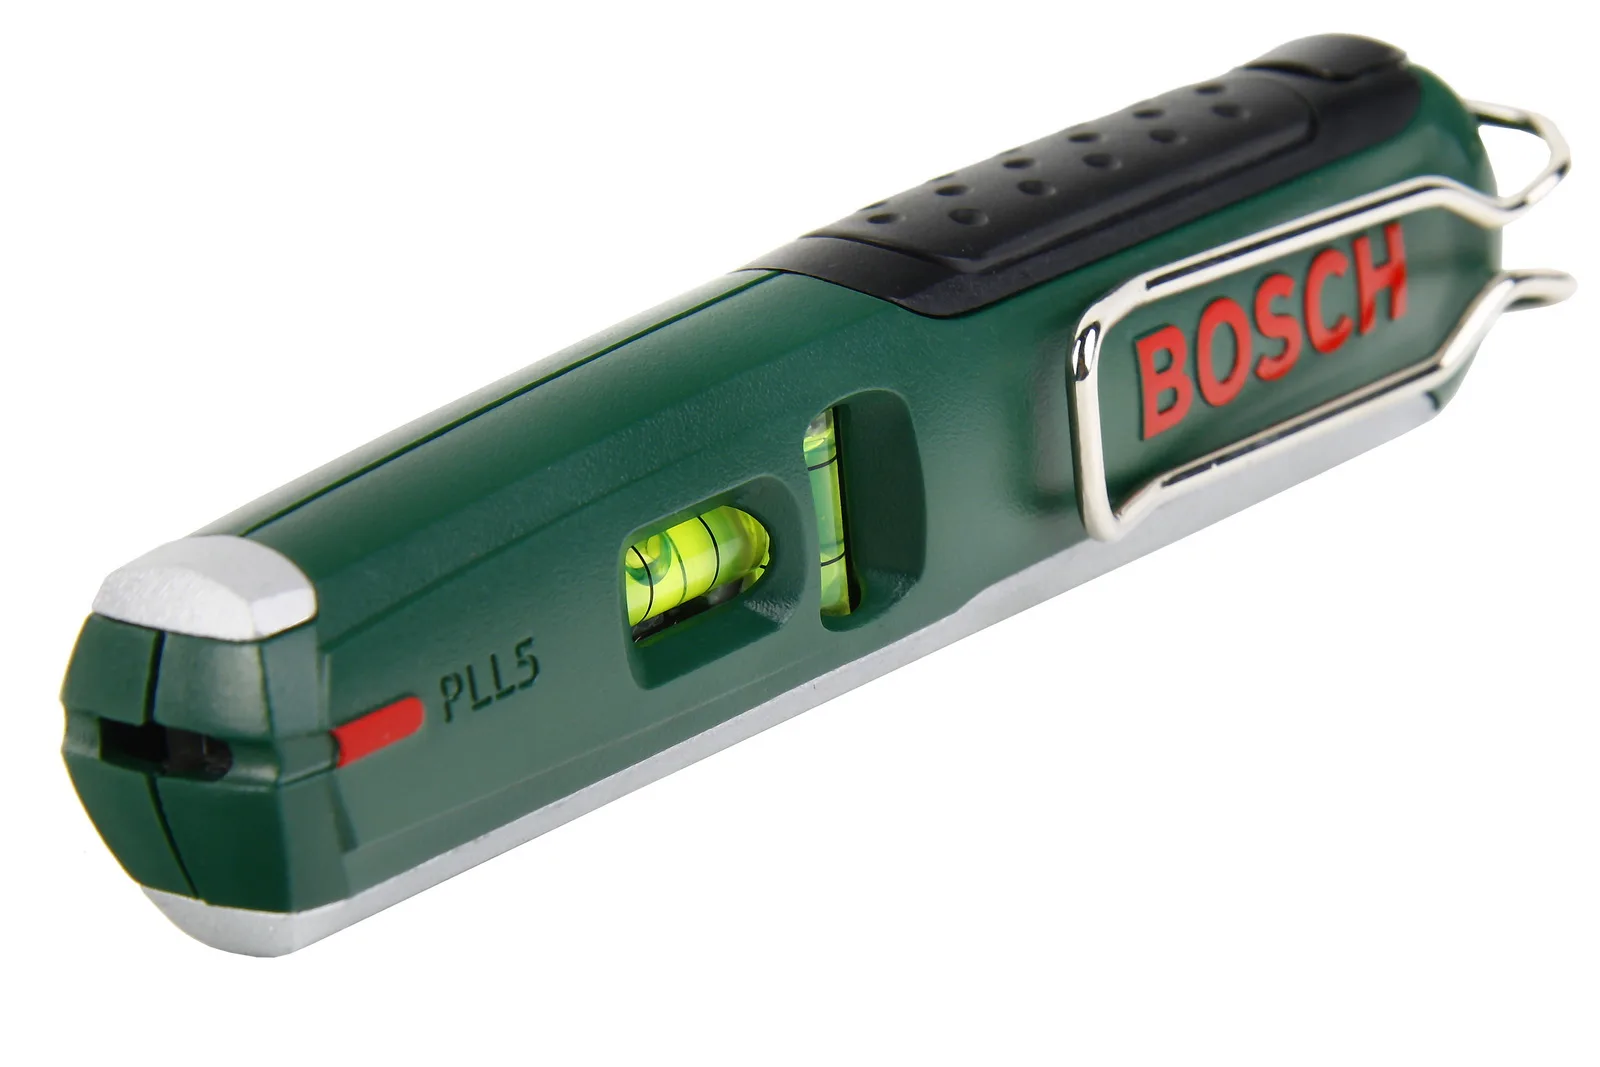 مستوى جديد pll 5 بوش في 7 أيام الشحن المجاني|bosch laser distance meter| bosch electricbosch fuel pump part numbers - AliExpress